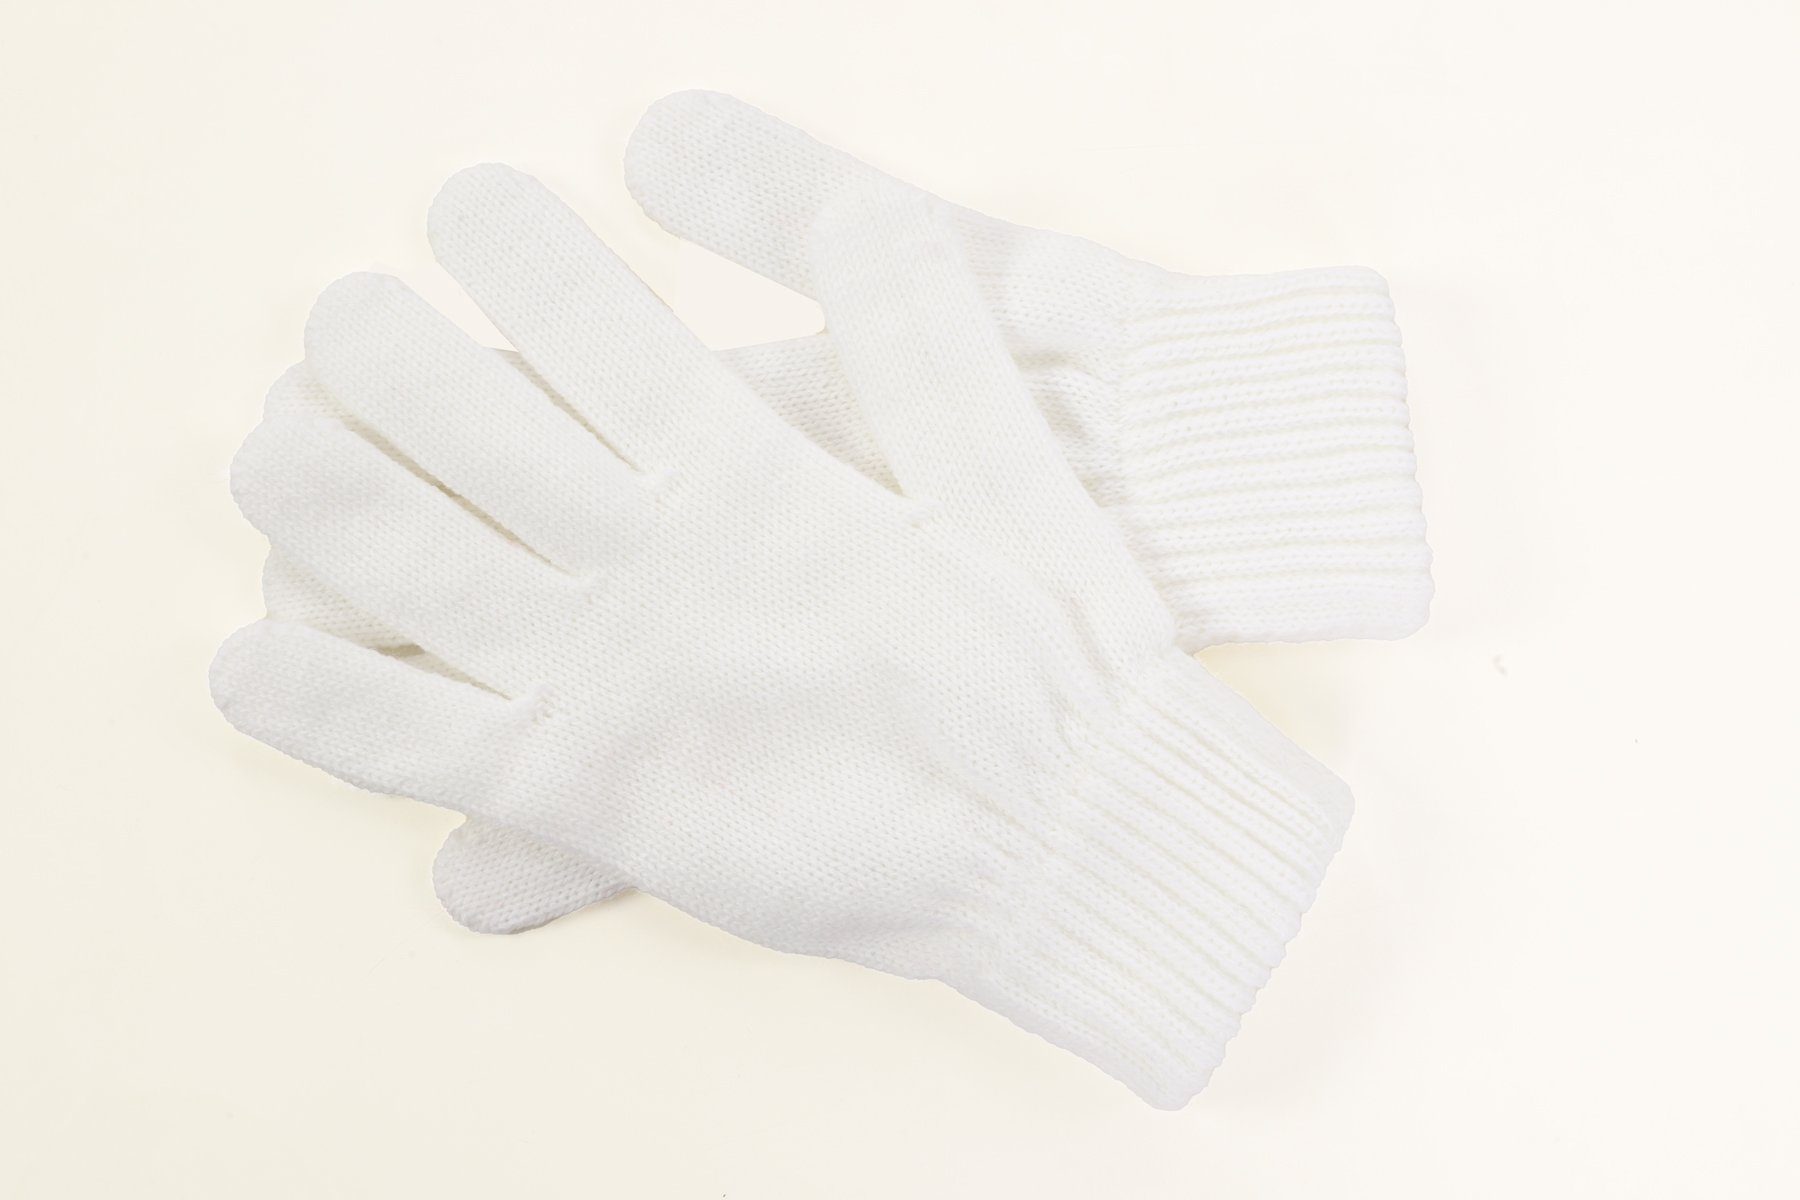 herémood Herren Weiss Rippstrick Handschuhe Strickhandschuhe Strickhandschuhe Winterhandschuhe